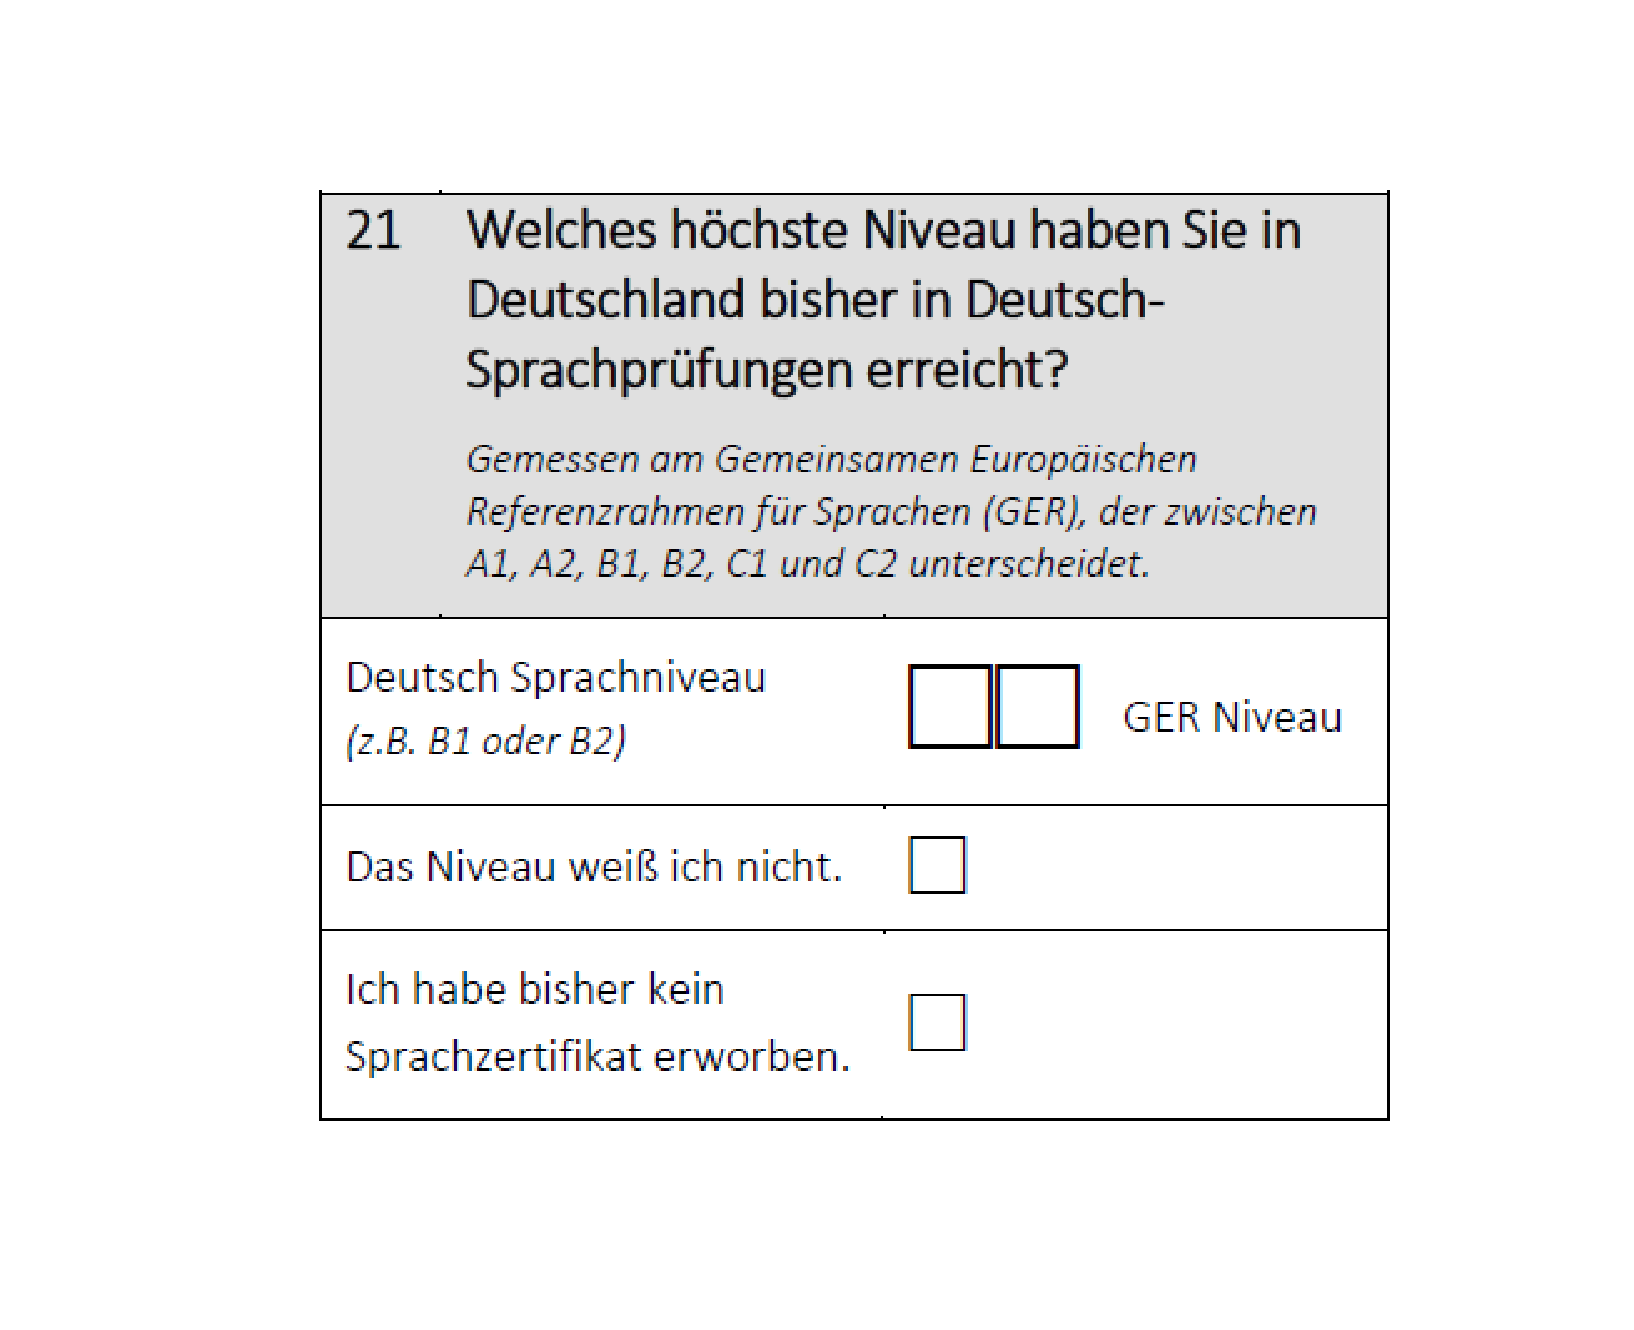 Welches höchste Niveau haben Sie in Deutschland bisher in Deutsch-Sprachprüfungen erreicht?